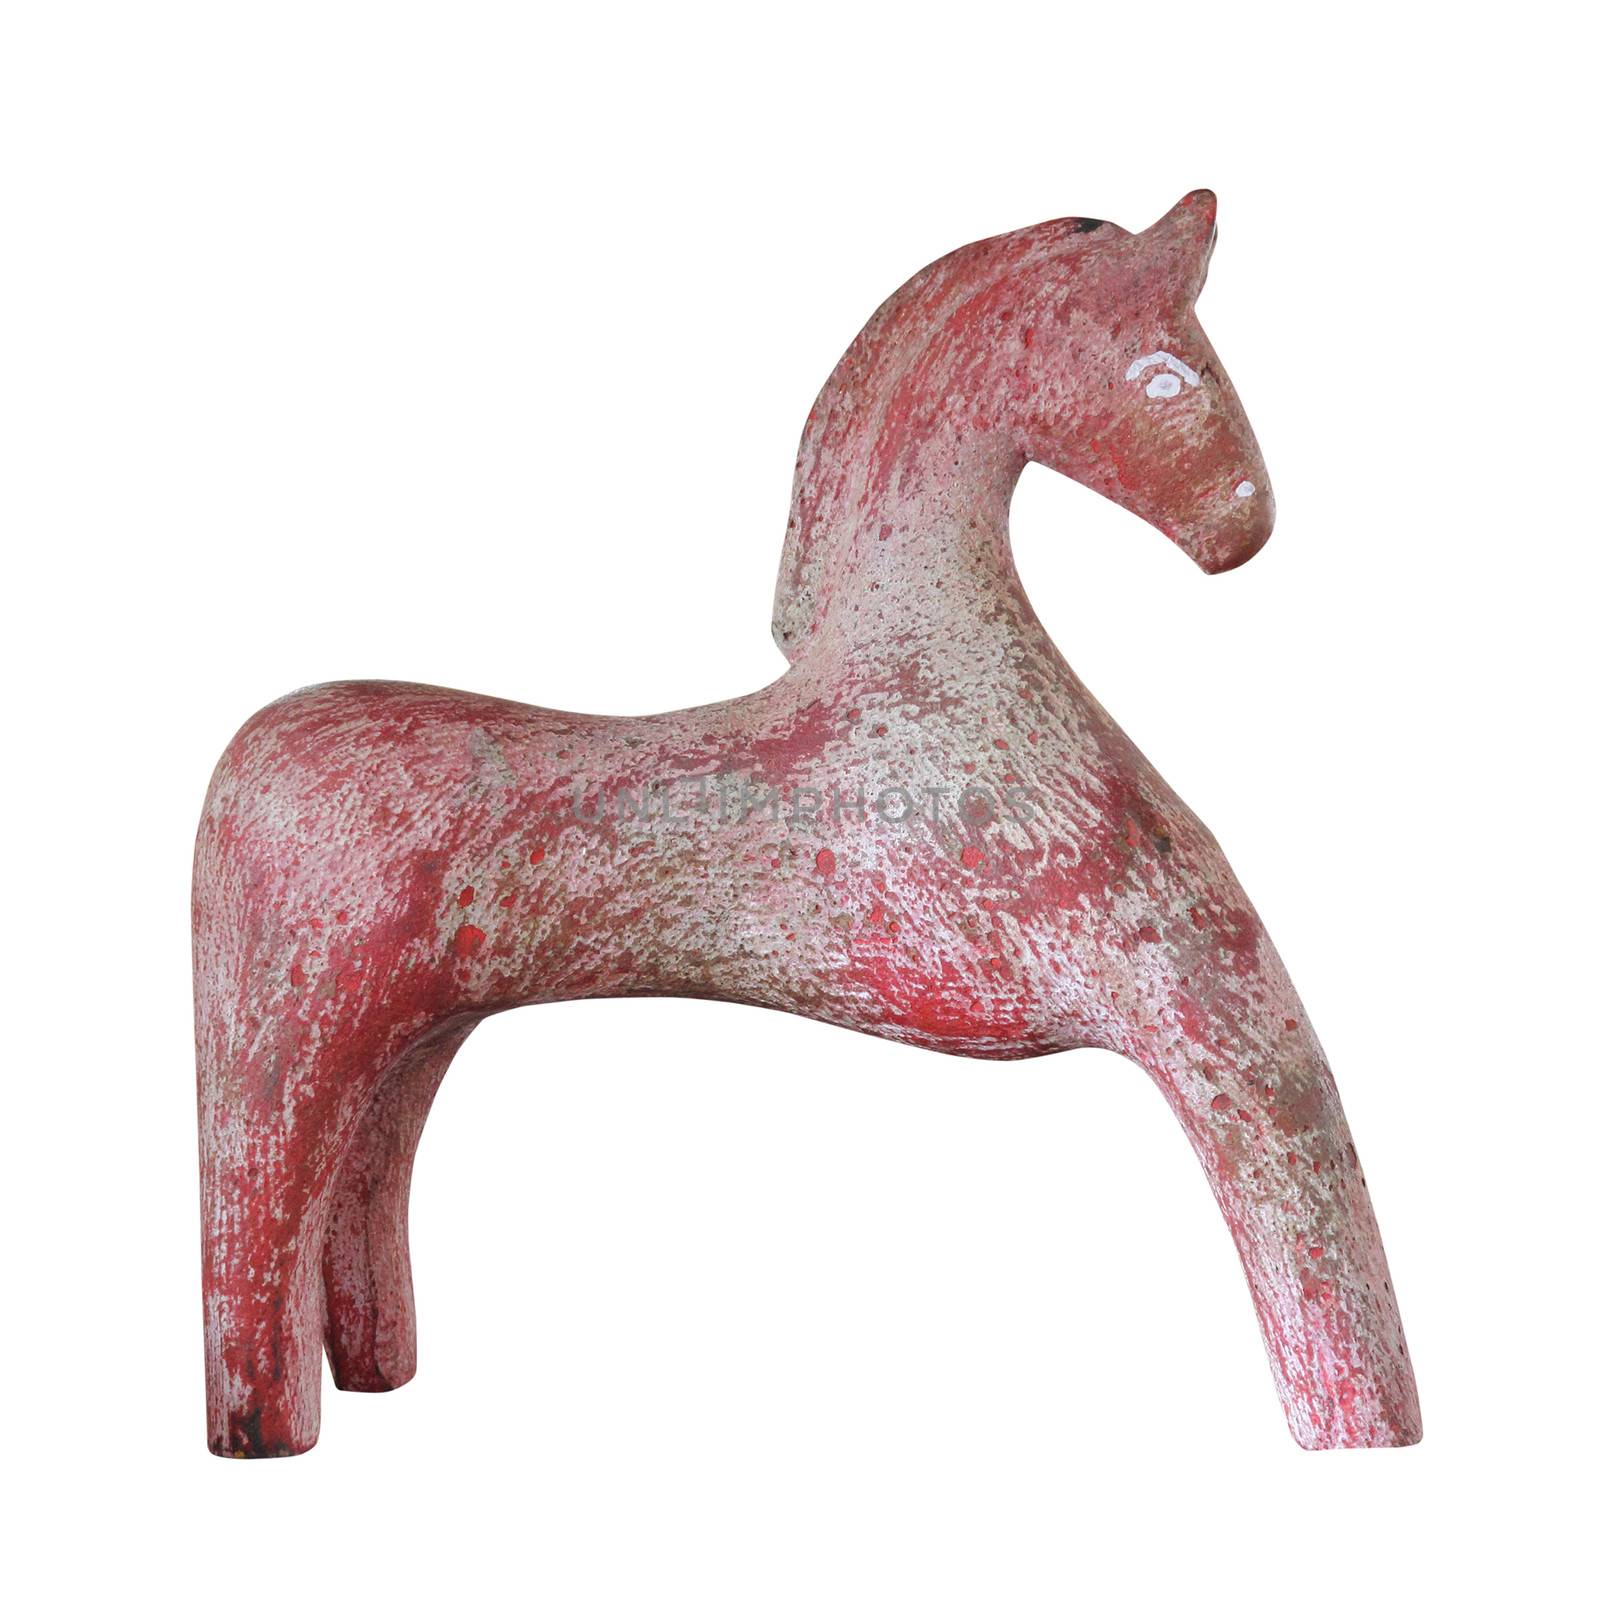 Plaster Horse by olovedog